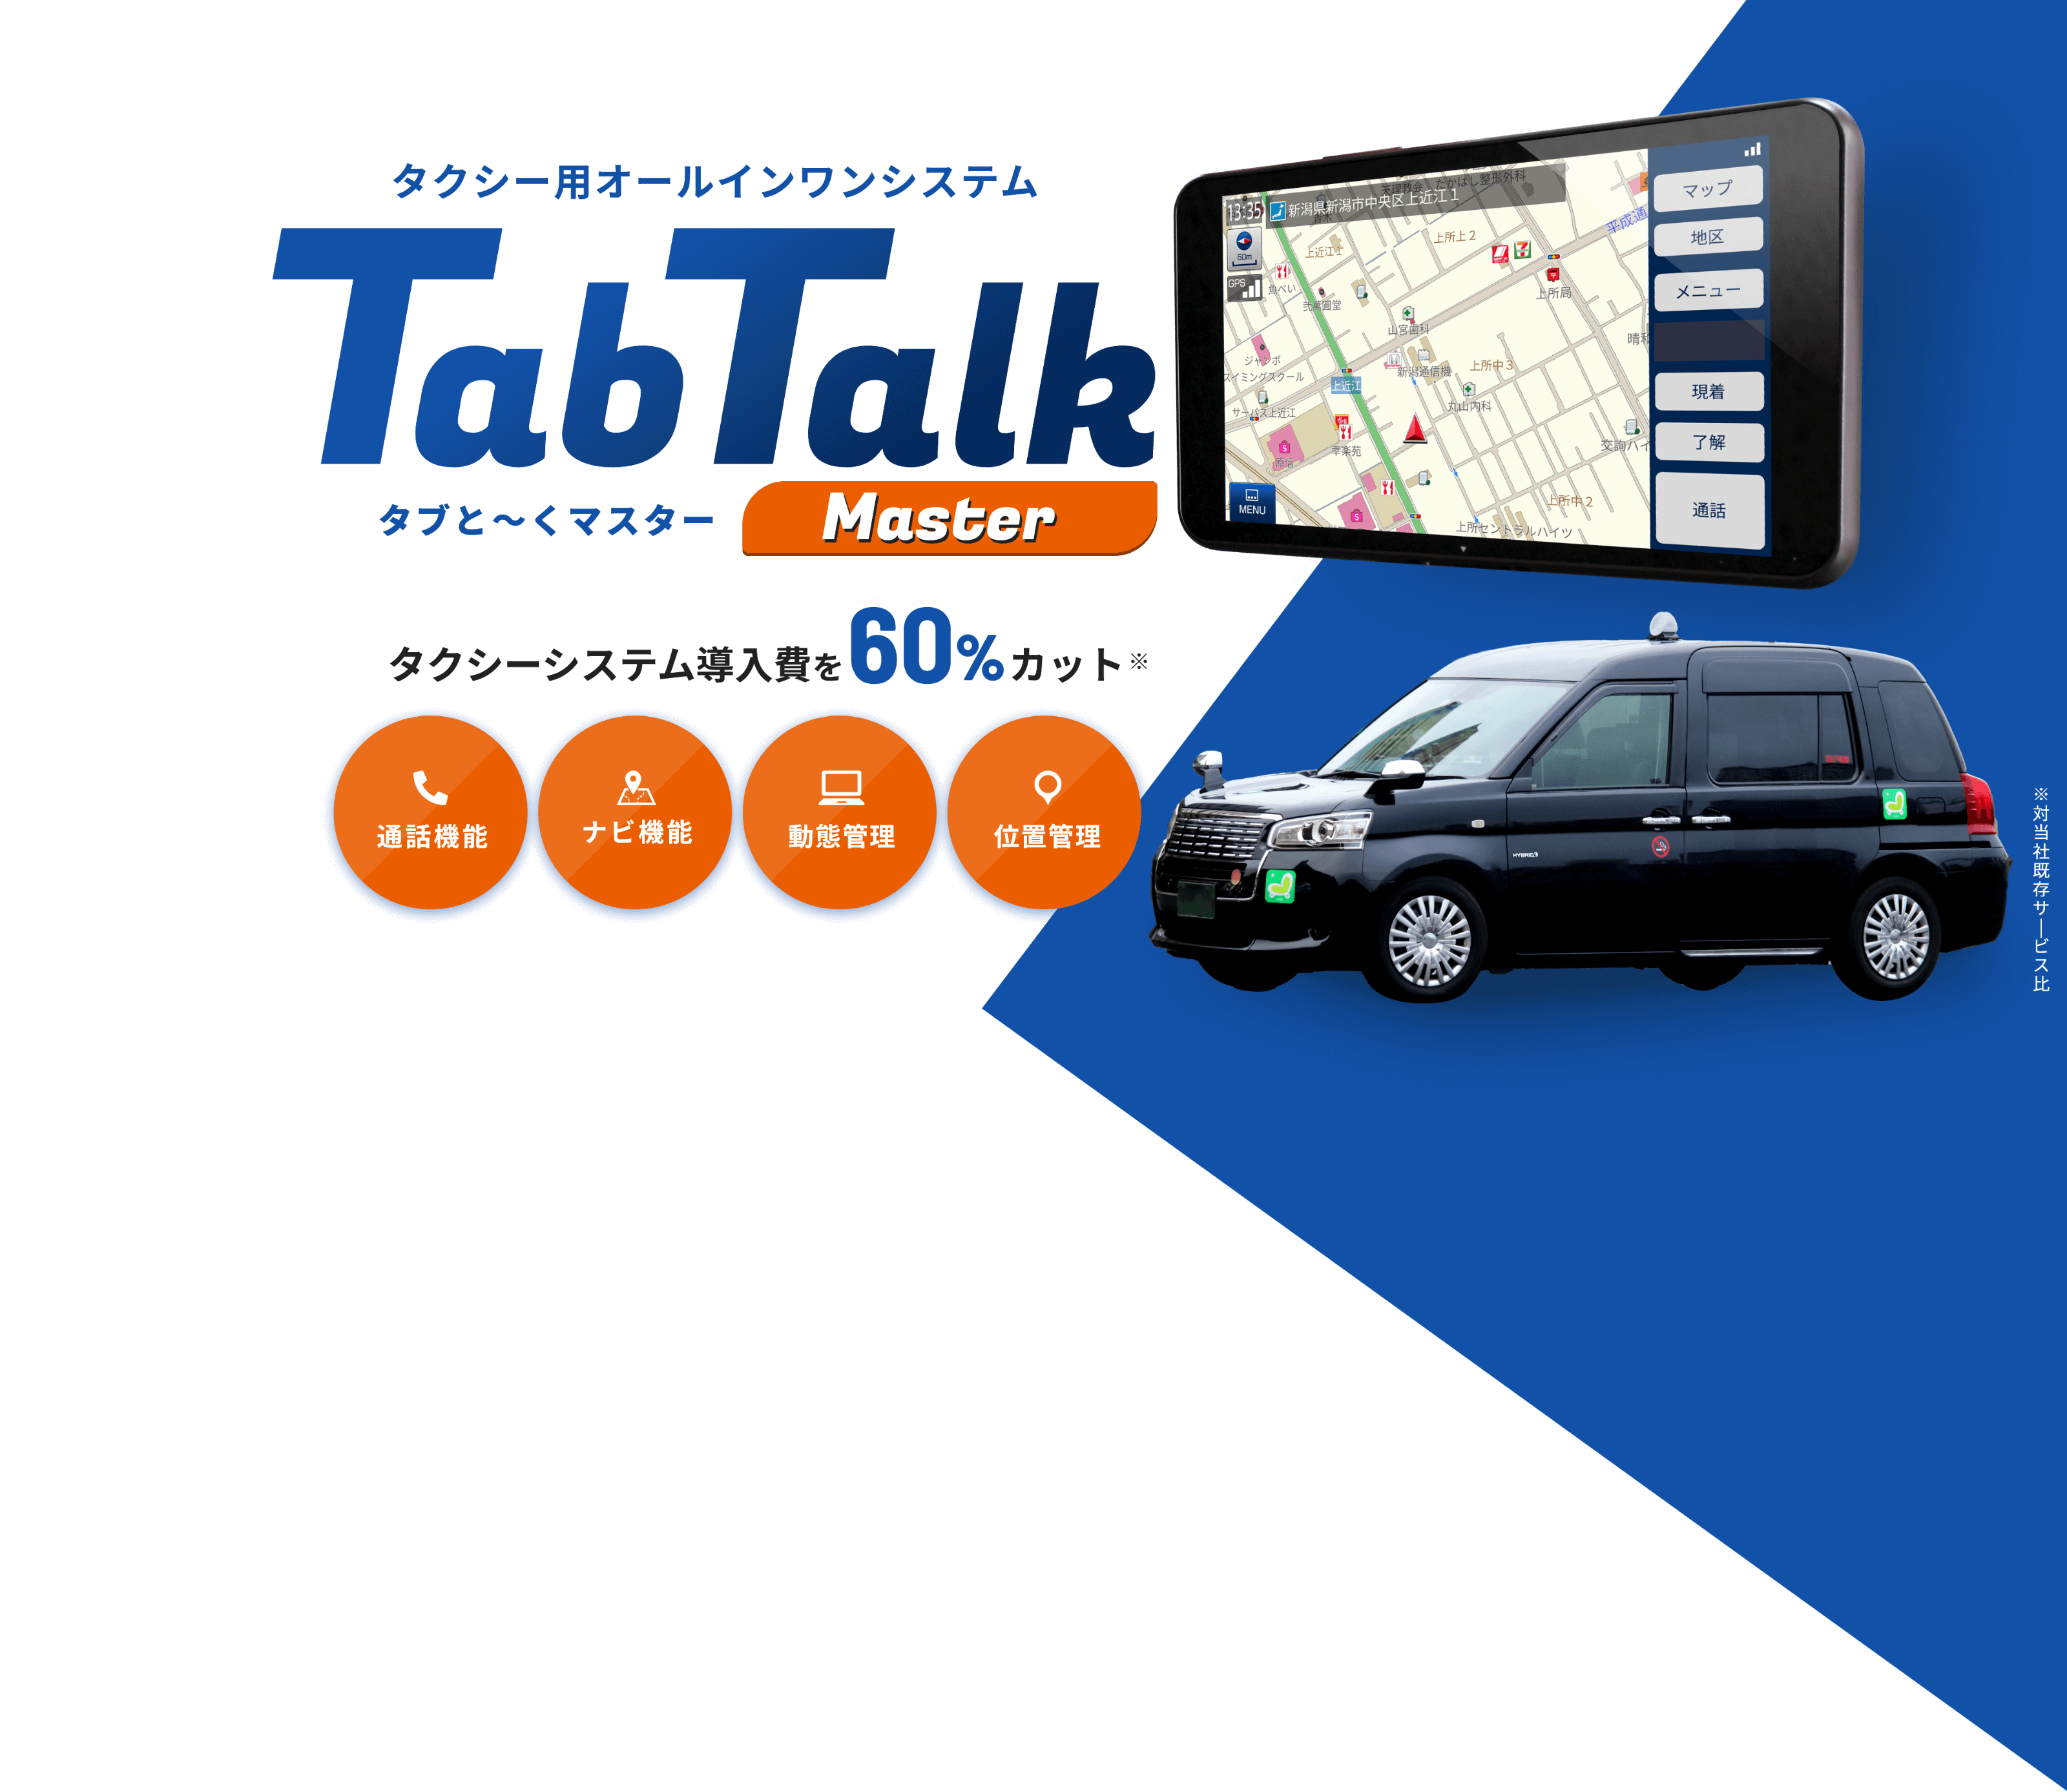 タクシー用オールインワンシステム TabTalk Master (タブと～くマスター)　タクシーシステム導入費を60%カット 通話機能・ナビ機能・動態管理・位置管理